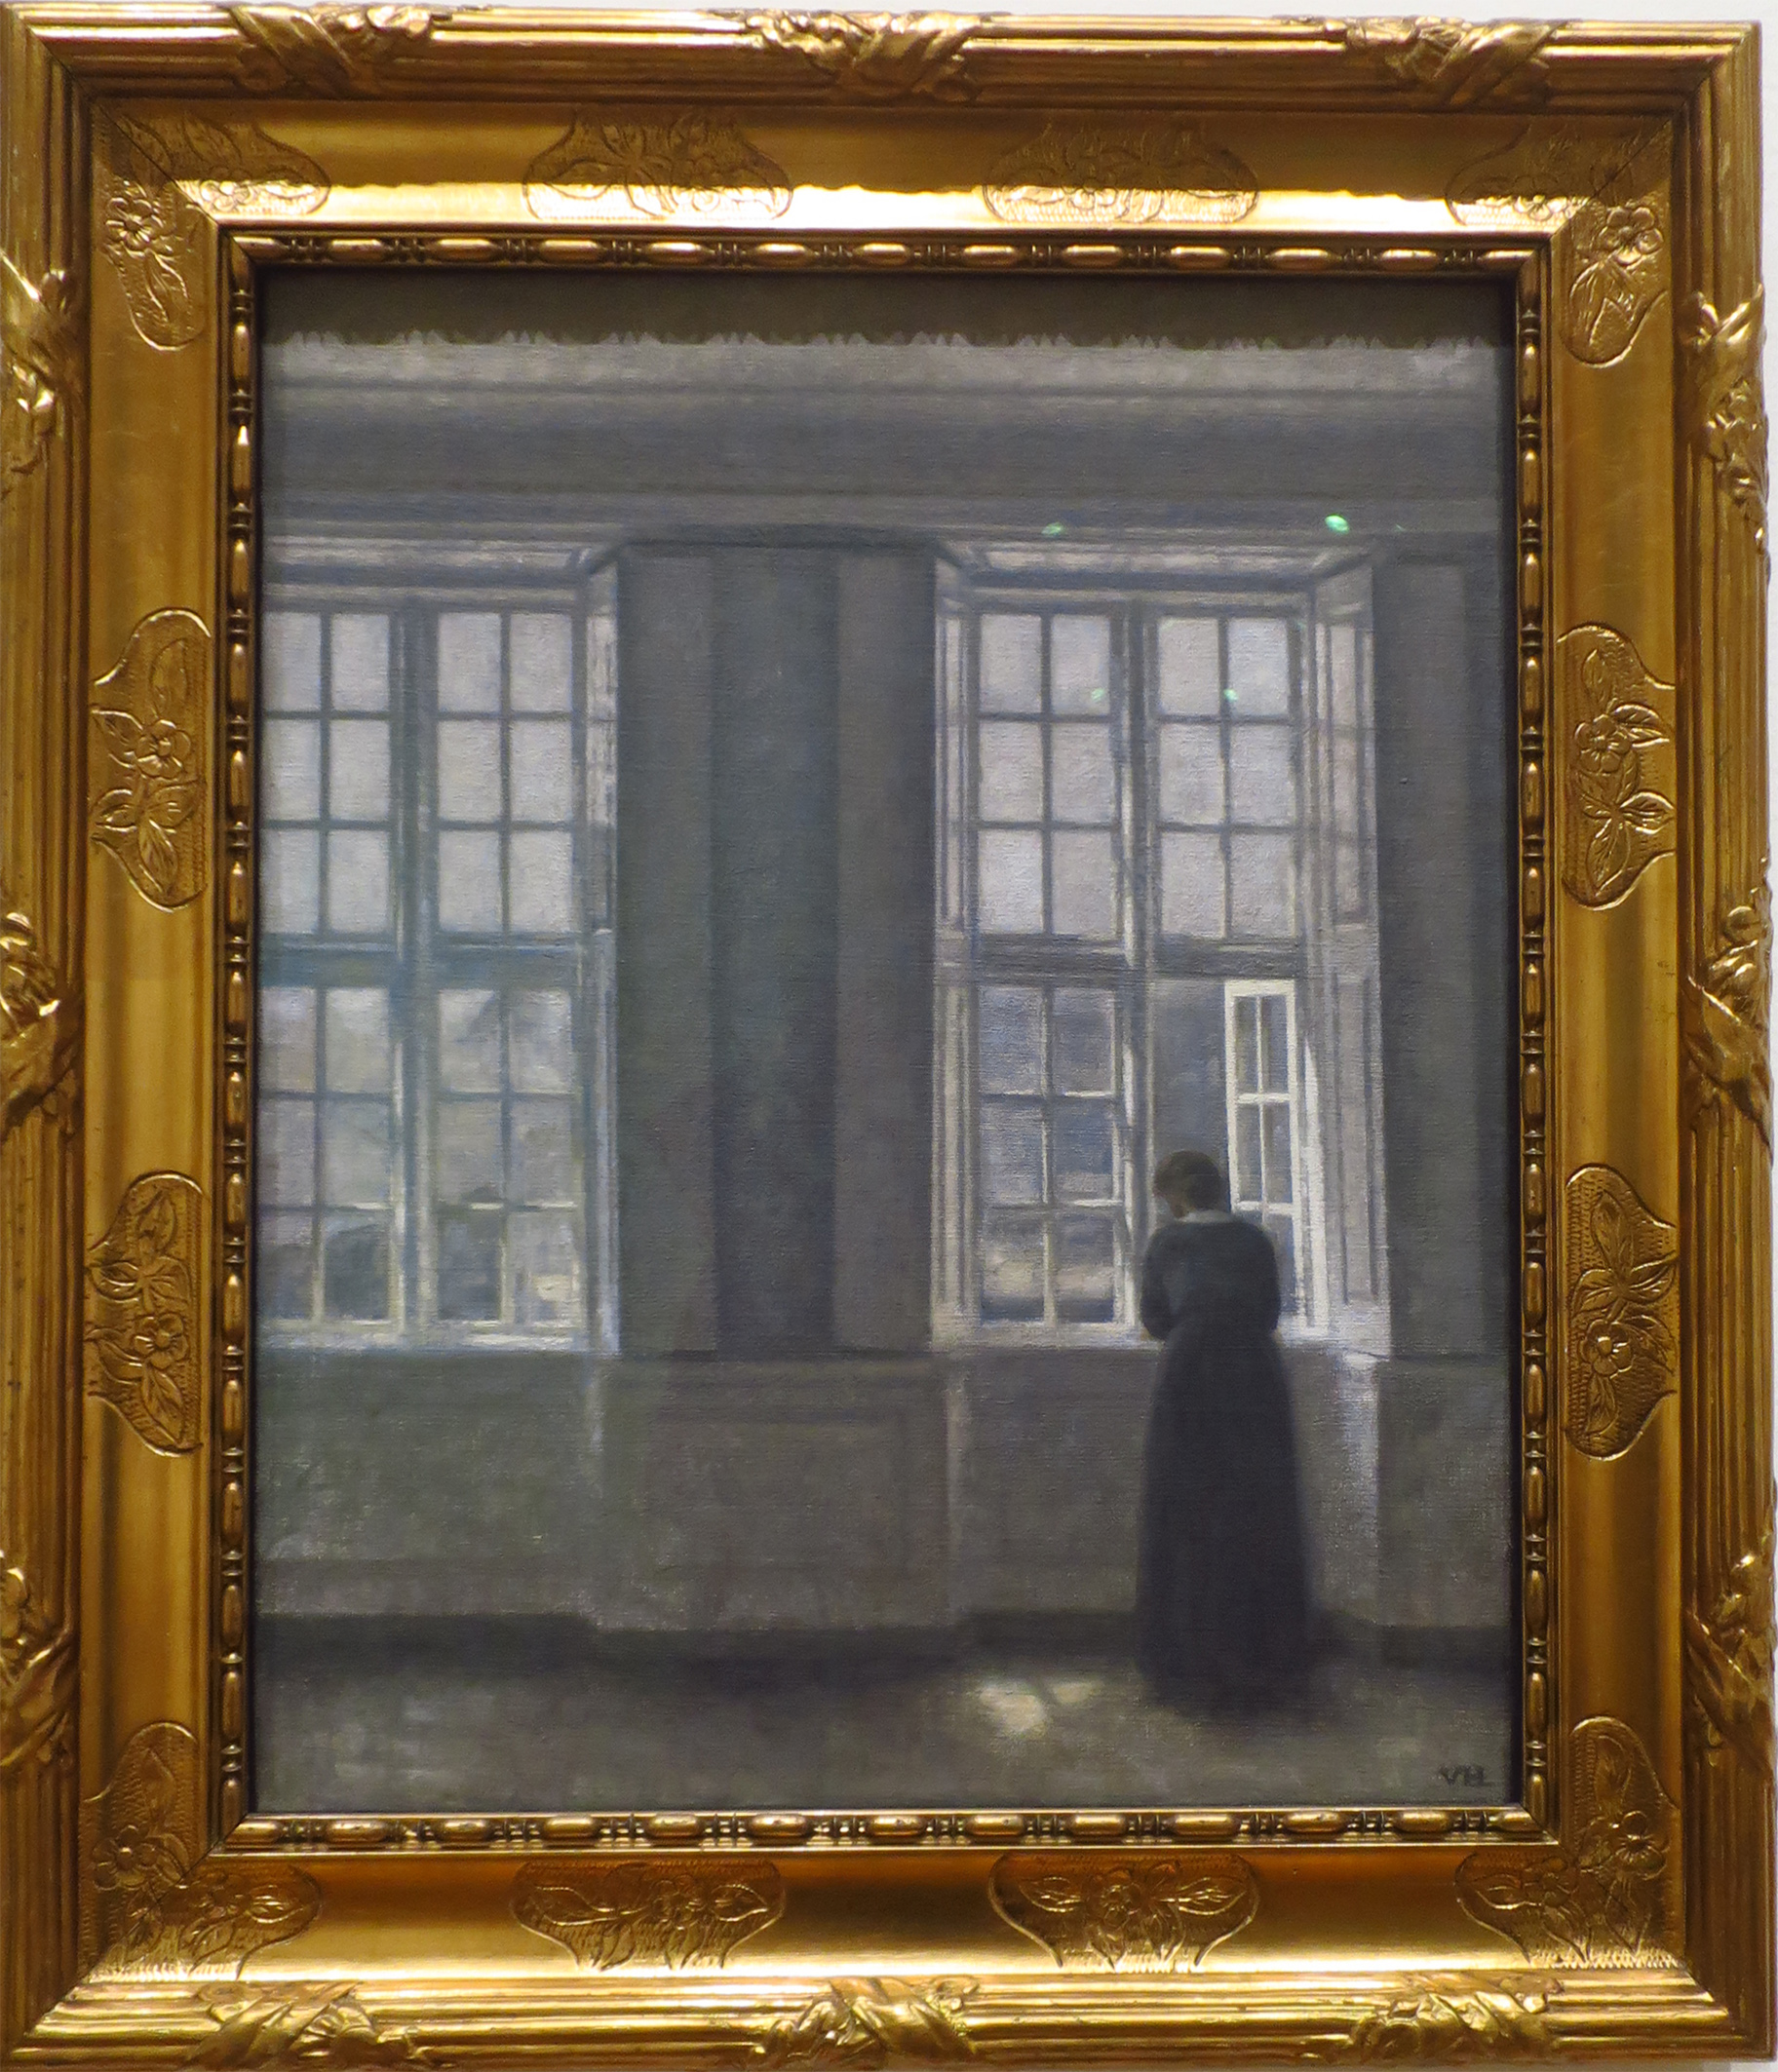 Les hautes fenêtres, intérieur de l'appartement de l'artiste 1913